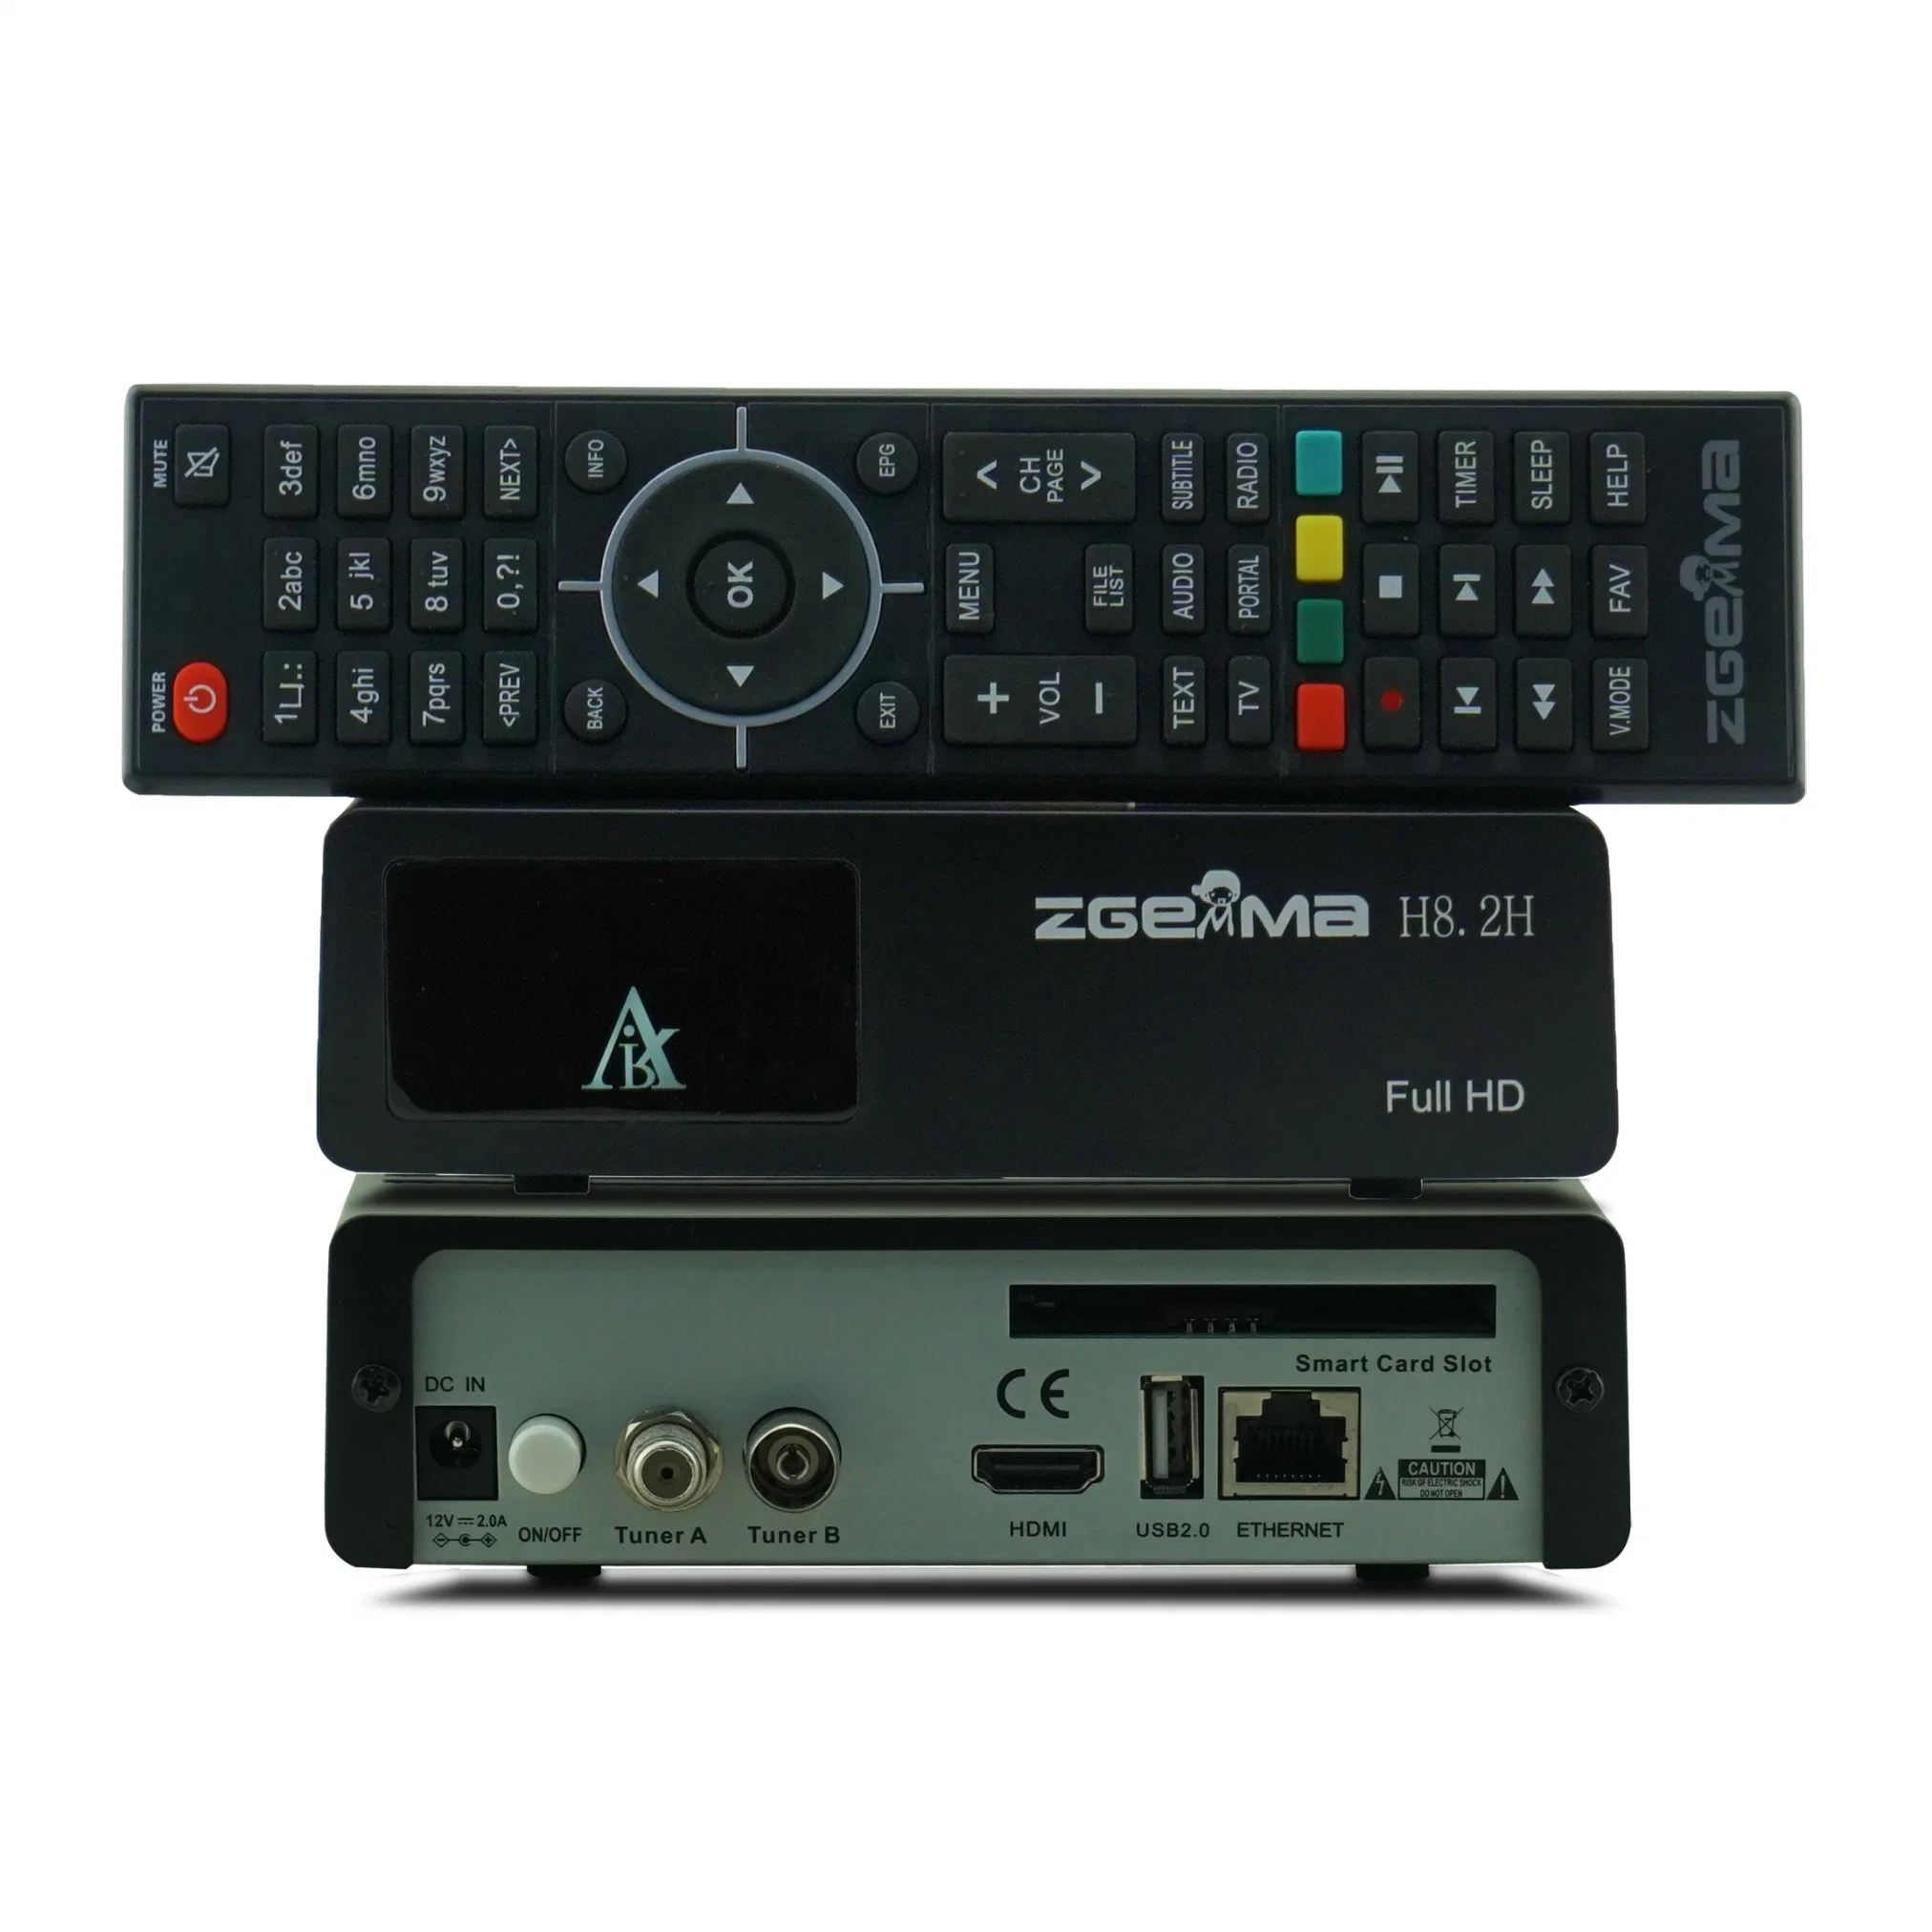 Zgemma H8.2h Satellite Receiver for Europe with DVB-S2X + DVB-T2/C Combo Tuner Built-in